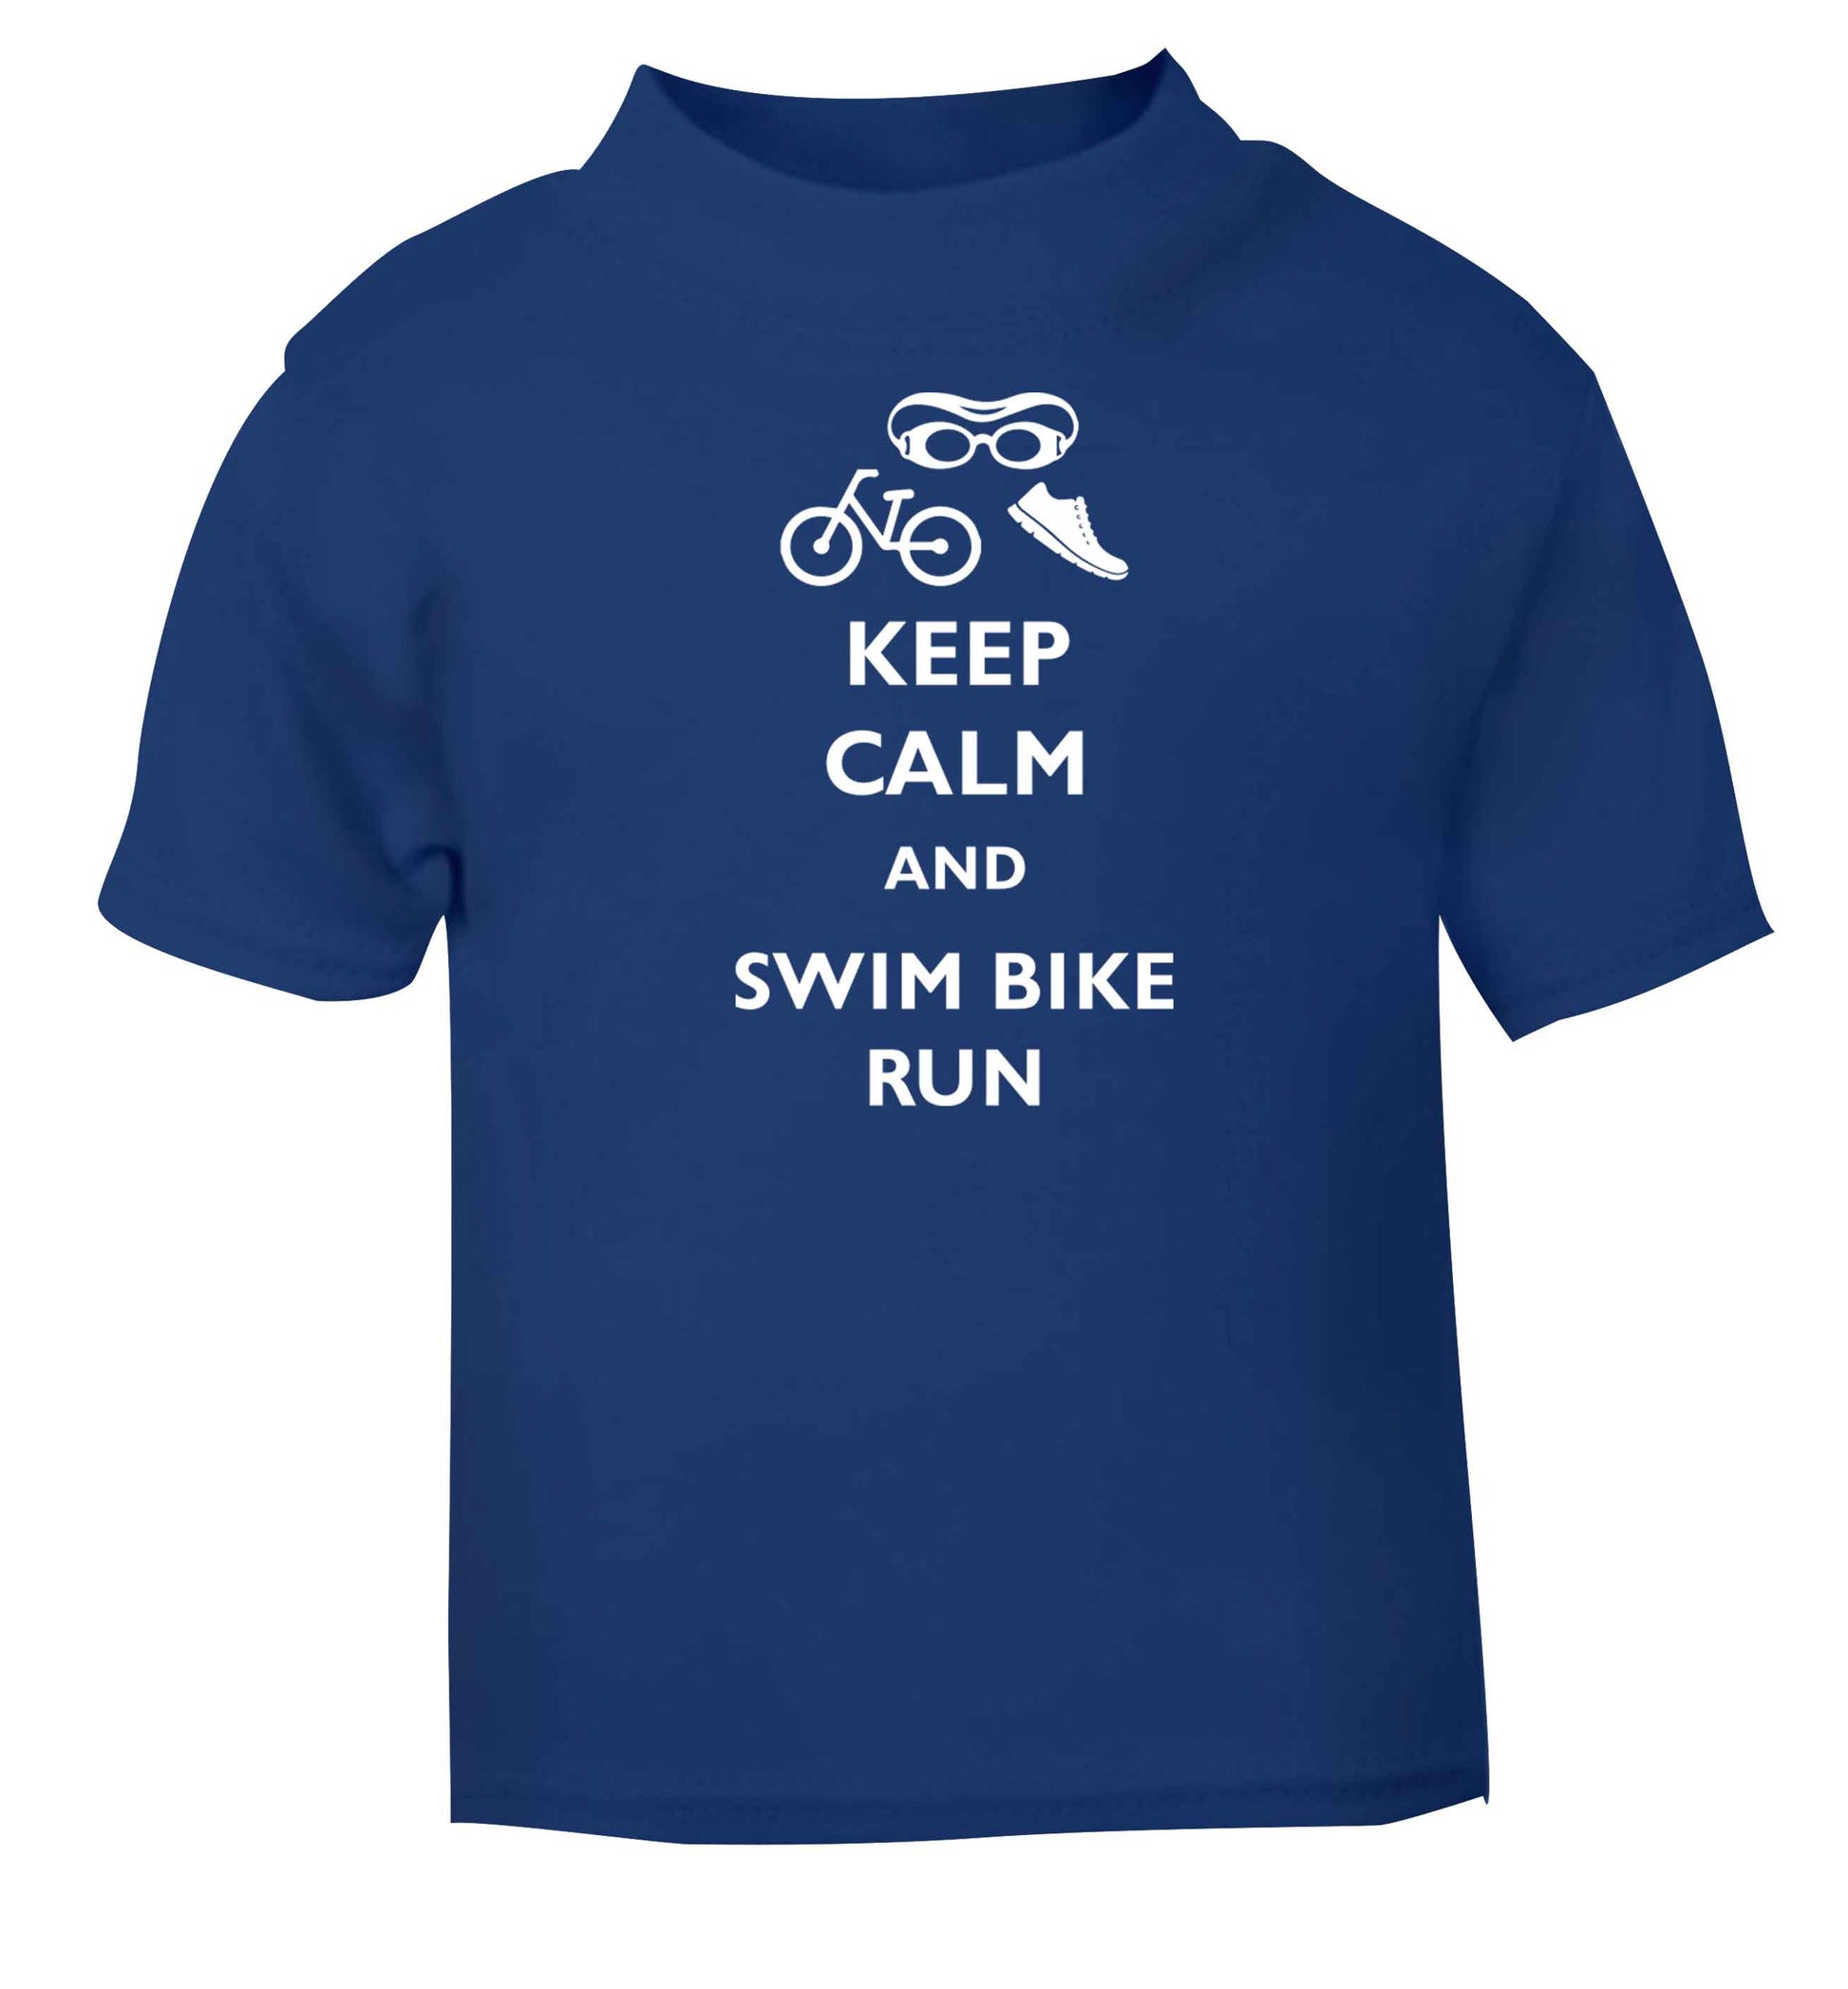 Keep calm and swim bike run blue baby toddler Tshirt 2 Years